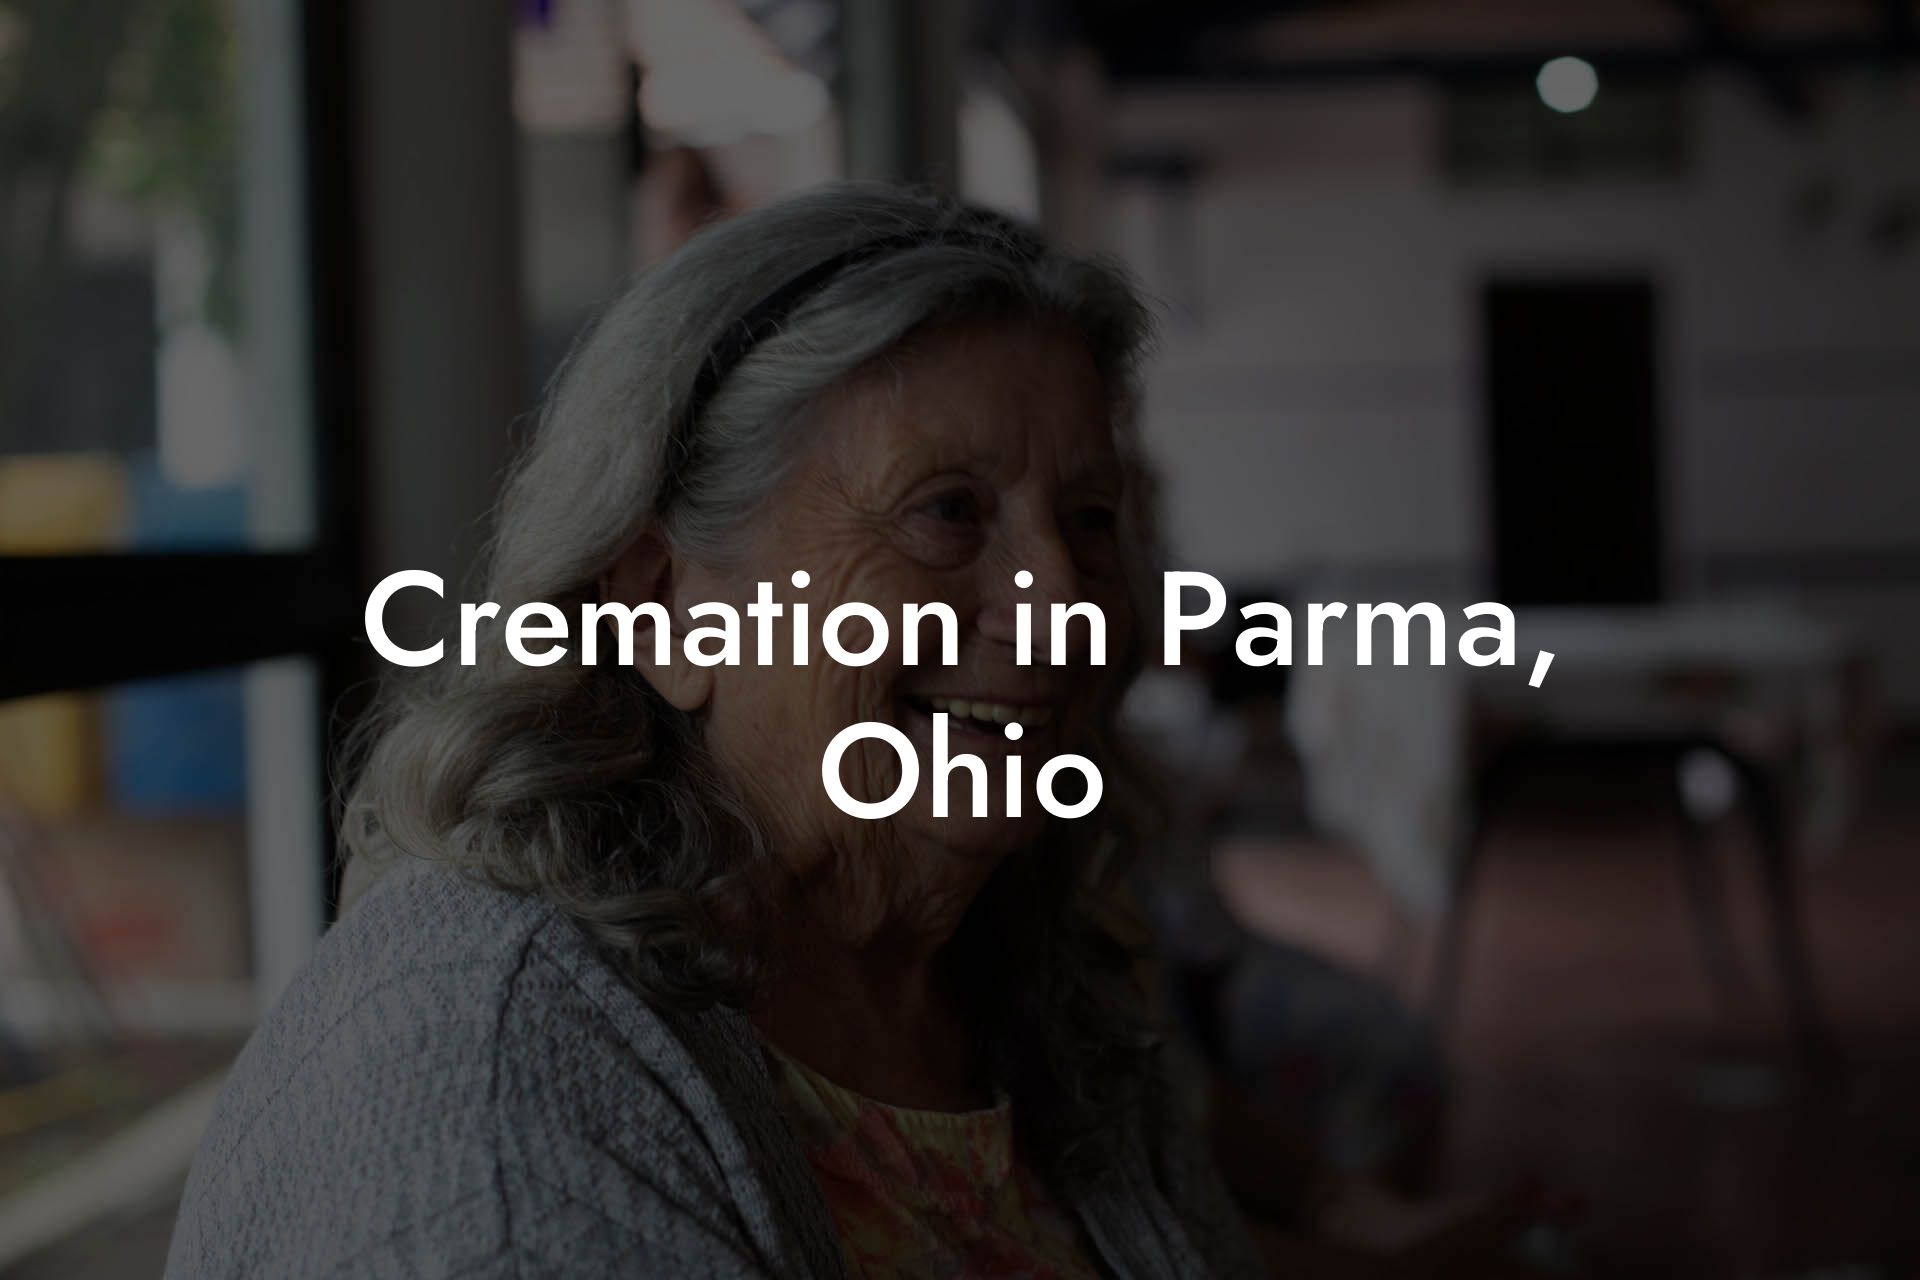 Cremation in Parma, Ohio